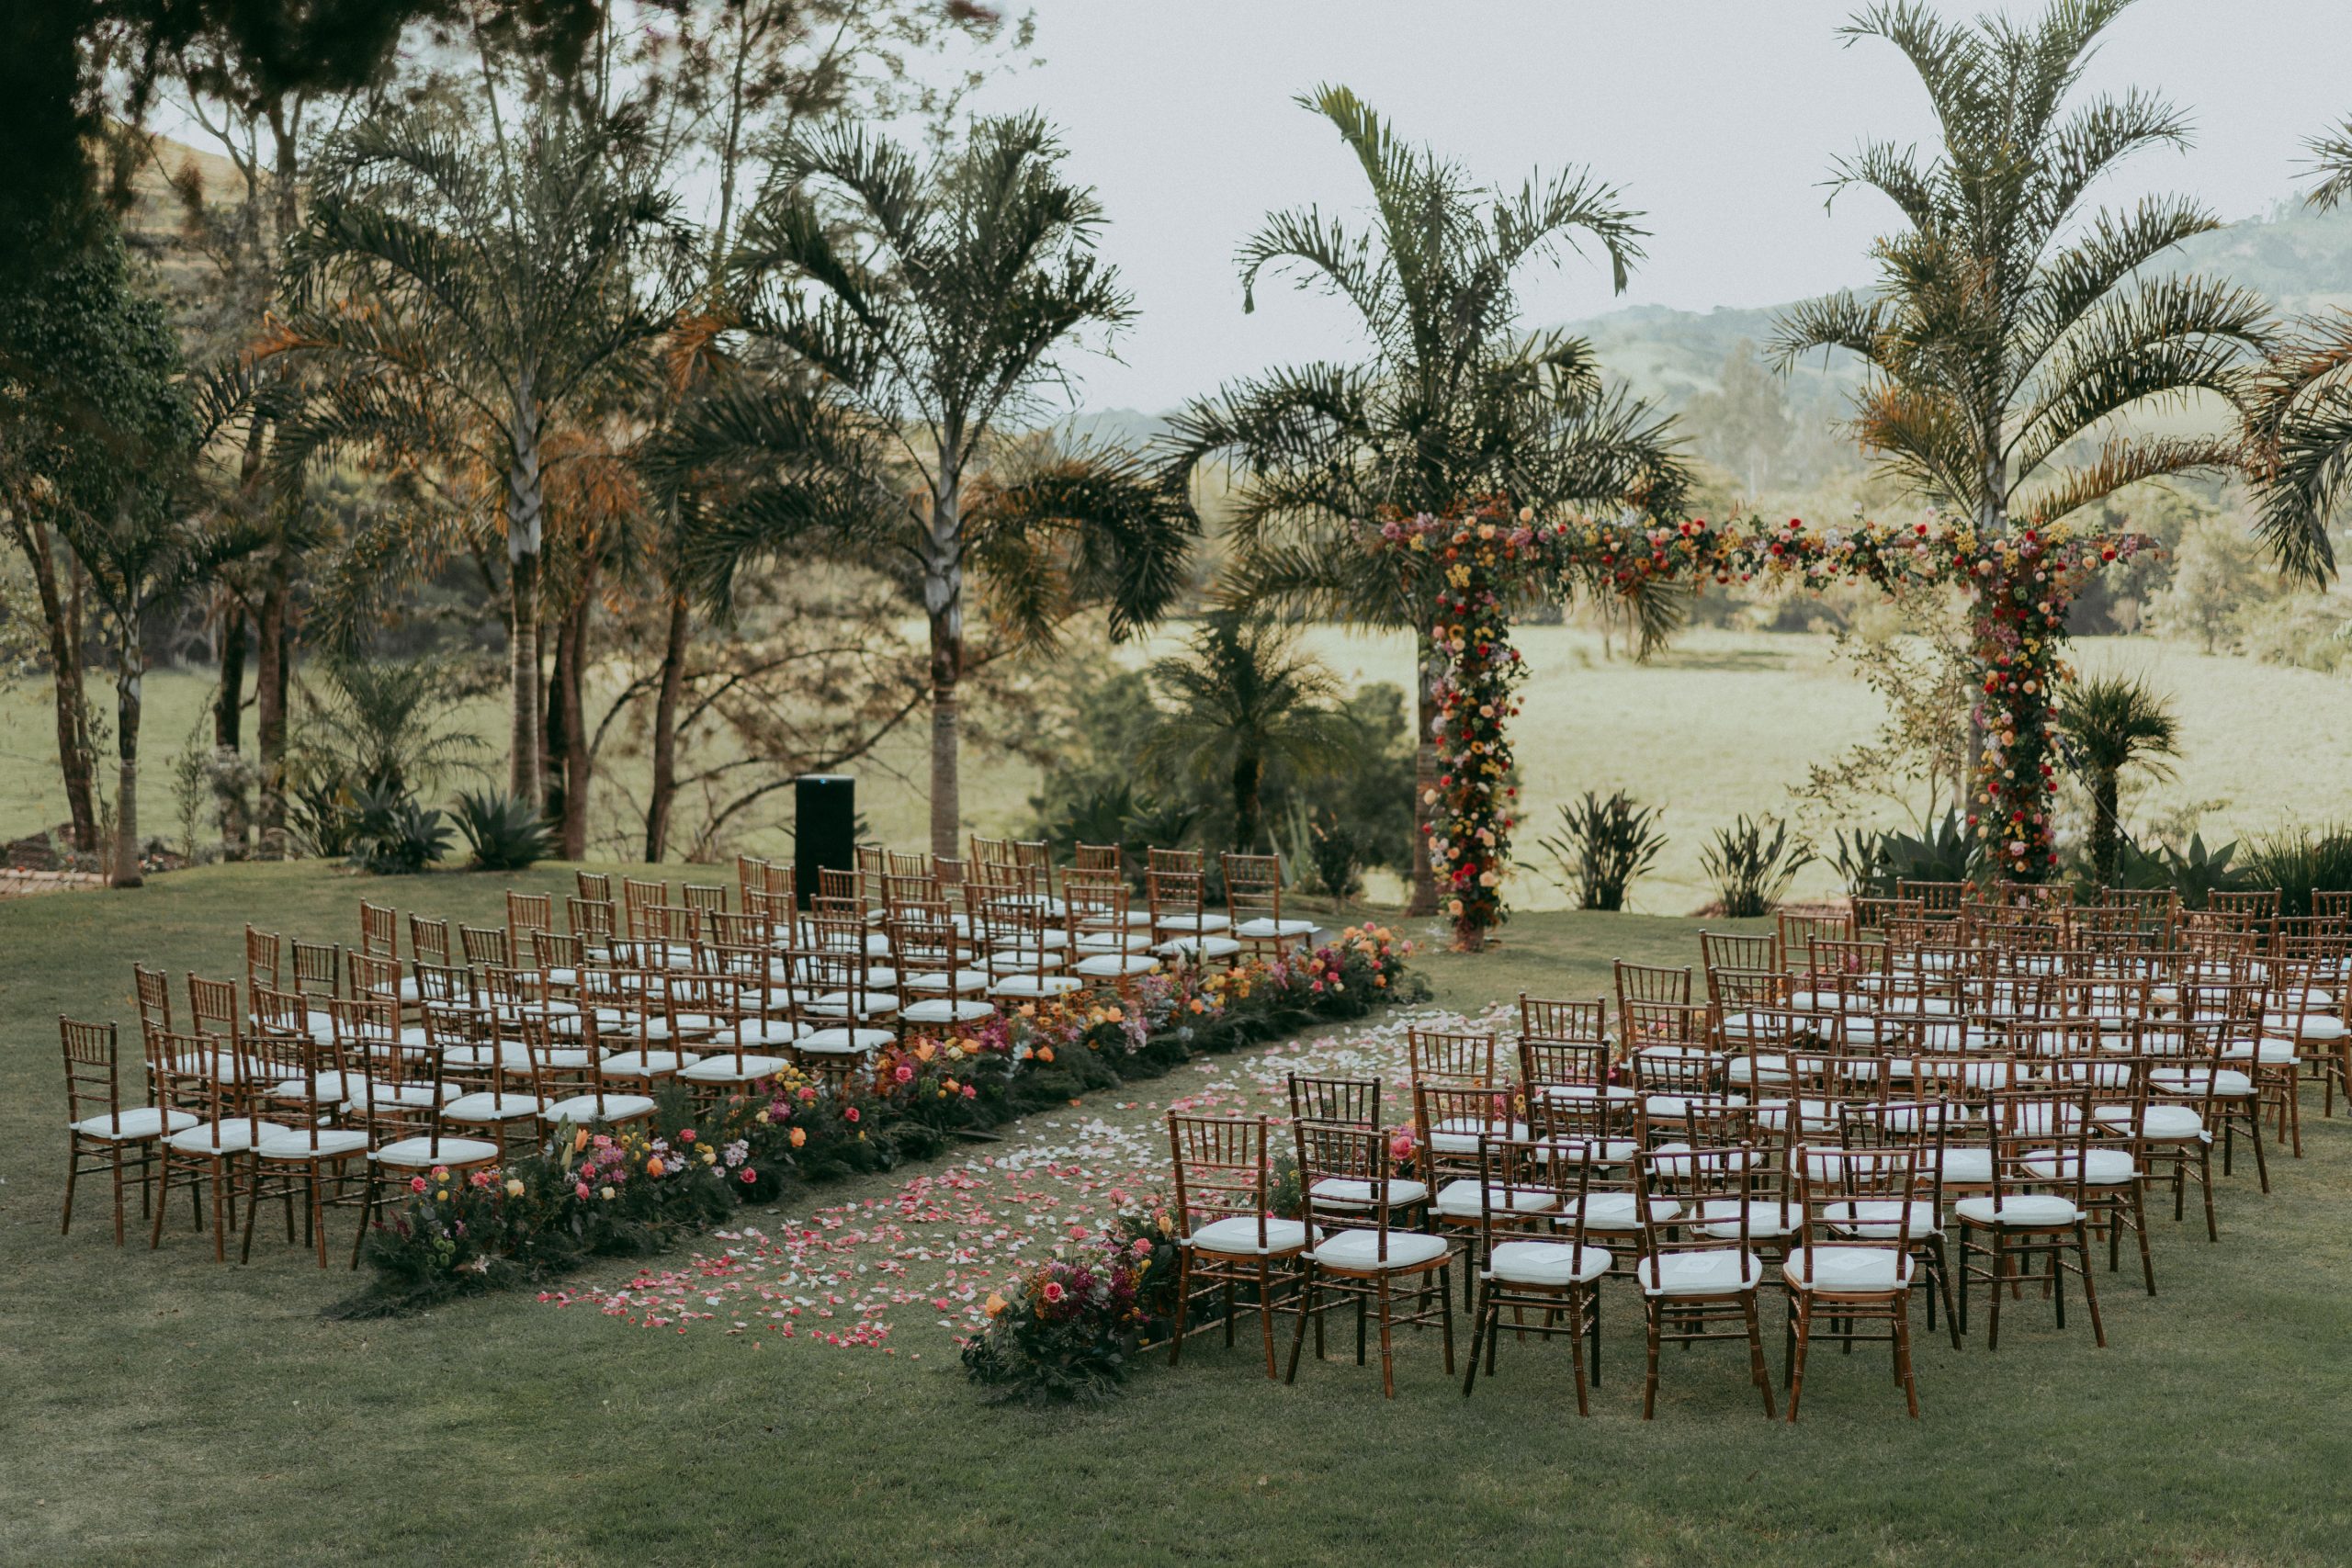 Destination wedding colorido e vibrante no meio da natureza em Minas Gerais &#8211; Jéssica &#038; Nathan